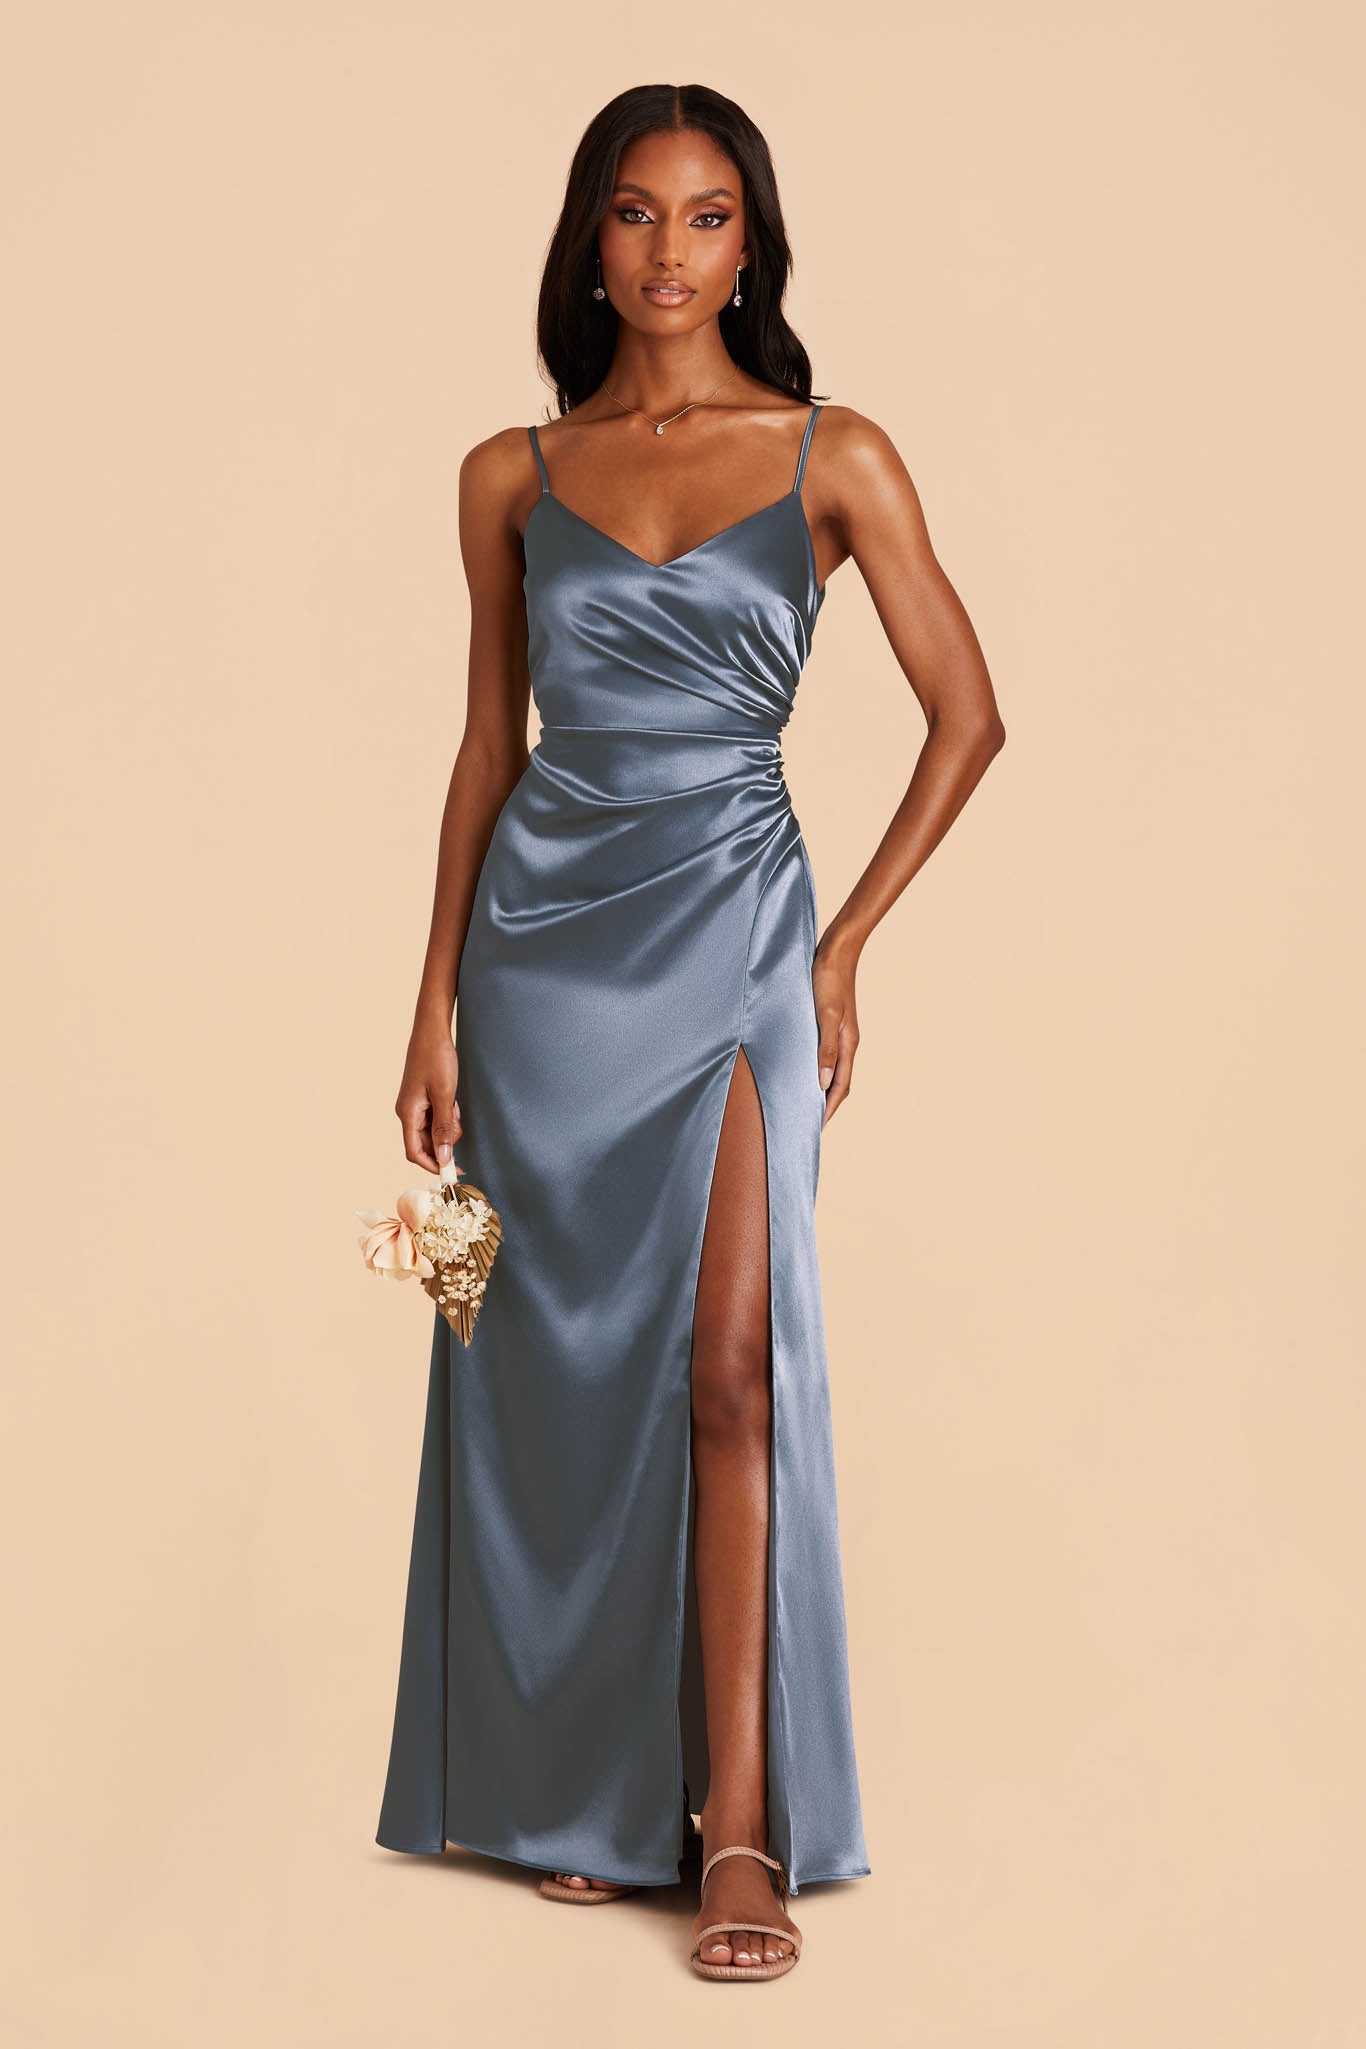 French Blue Catherine Shiny Satin Dress by Birdy Grey